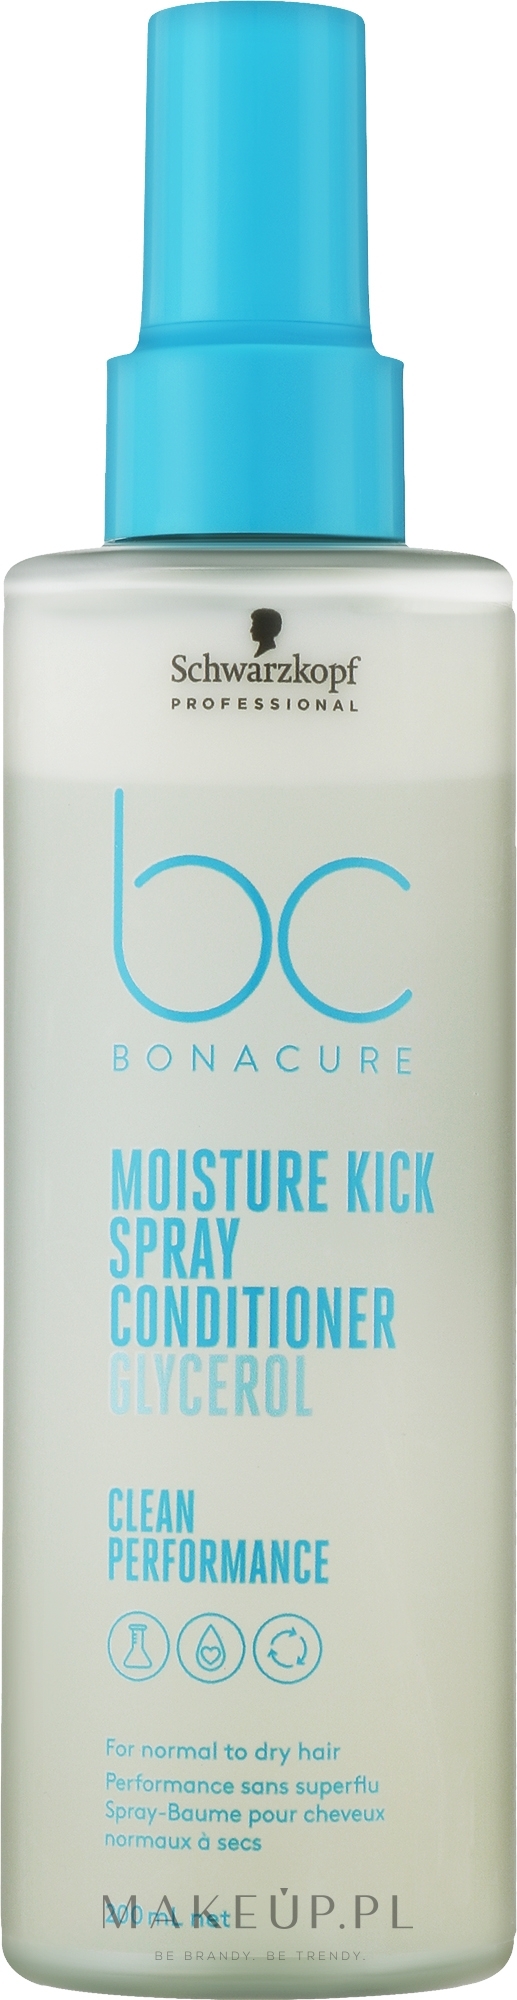 Odżywka do włosów w sprayu - Schwarzkopf Professional Bonacure Moisture Kick Spray Conditioner Glycerol — Zdjęcie 200 ml